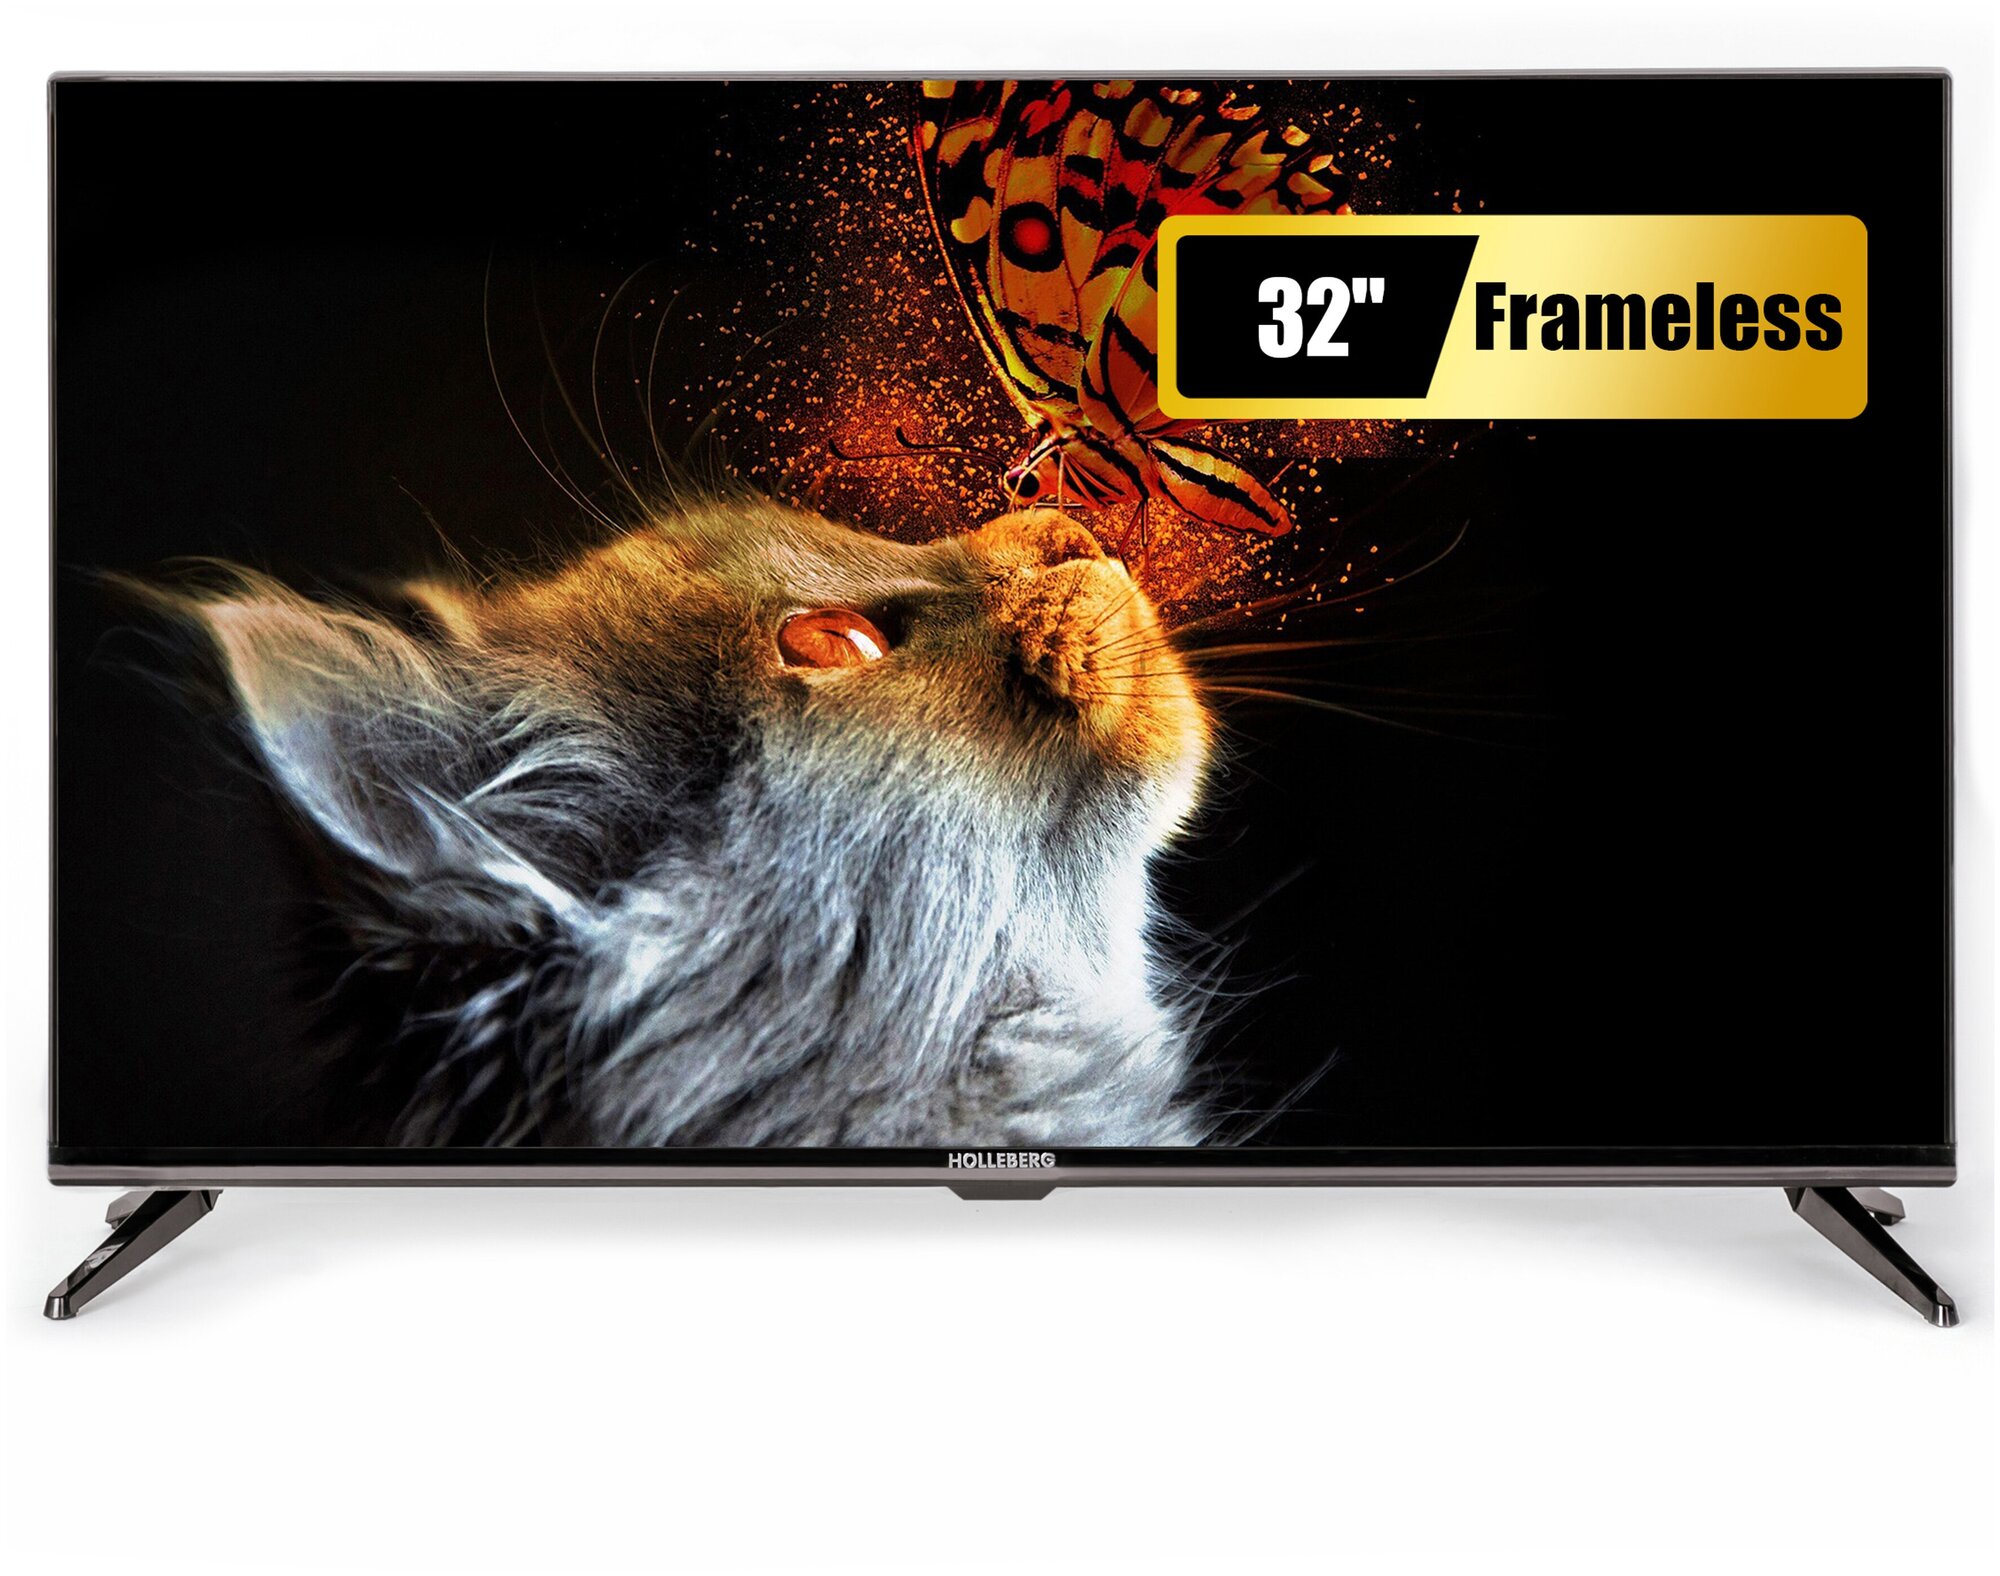 Телевизор HOLLEBERG HGTV-LED32HD103T2 (Frameless), диагональ 32", Frameless.